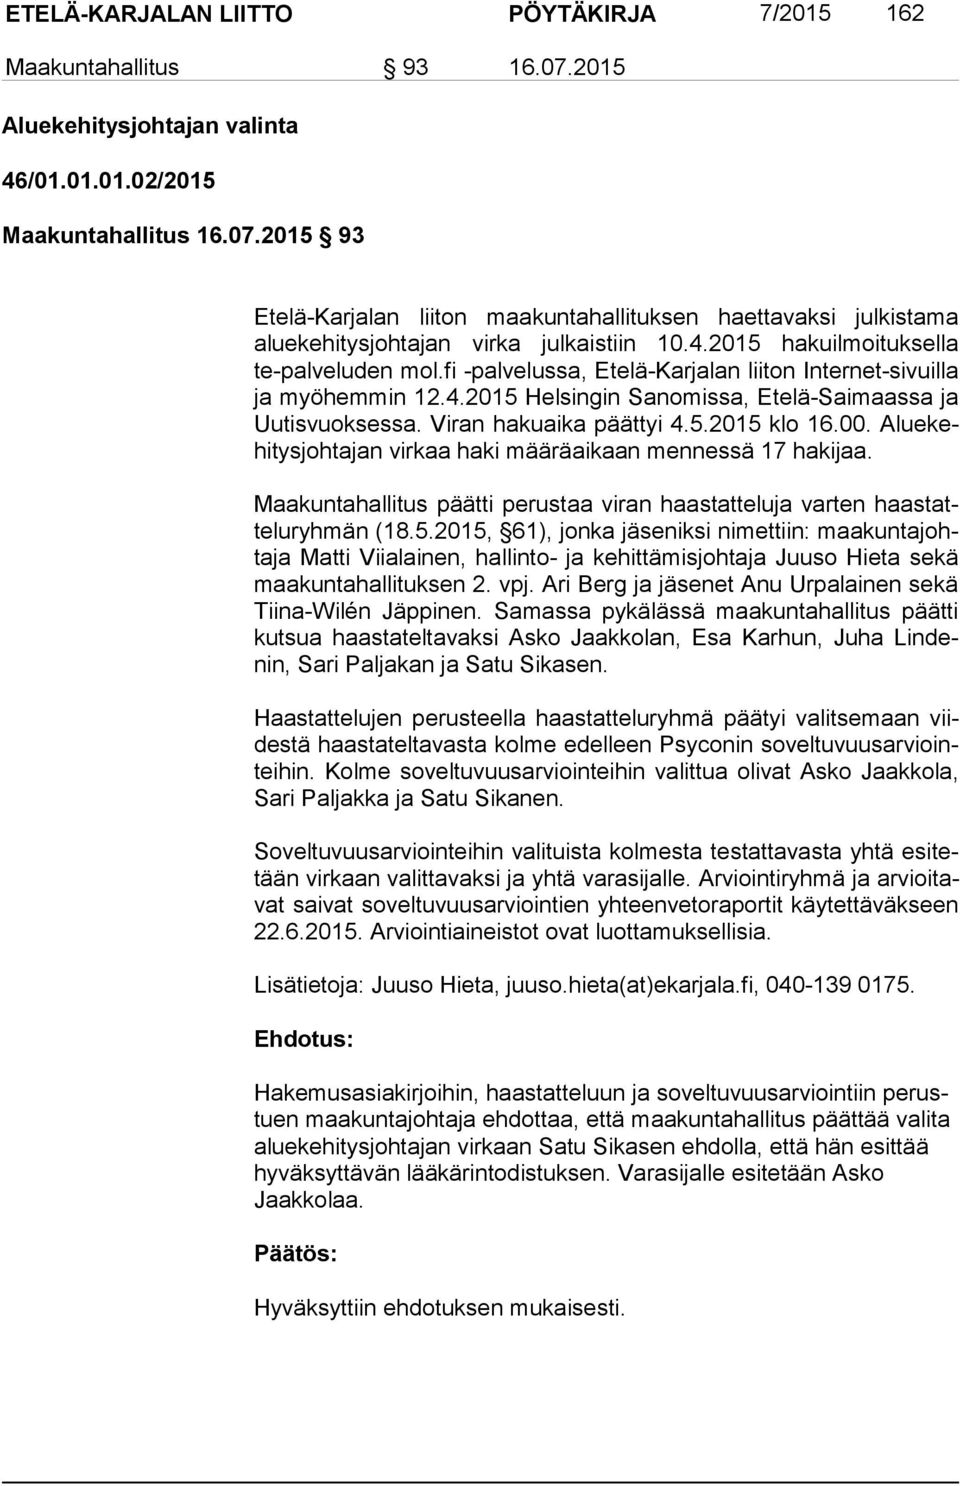 Viran hakuaika päättyi 4.5.2015 klo 16.00. Alue kehi tys joh ta jan virkaa haki määräaikaan mennessä 17 hakijaa. Maakuntahallitus päätti perustaa viran haastatteluja varten haas tatte lu ryh män (18.